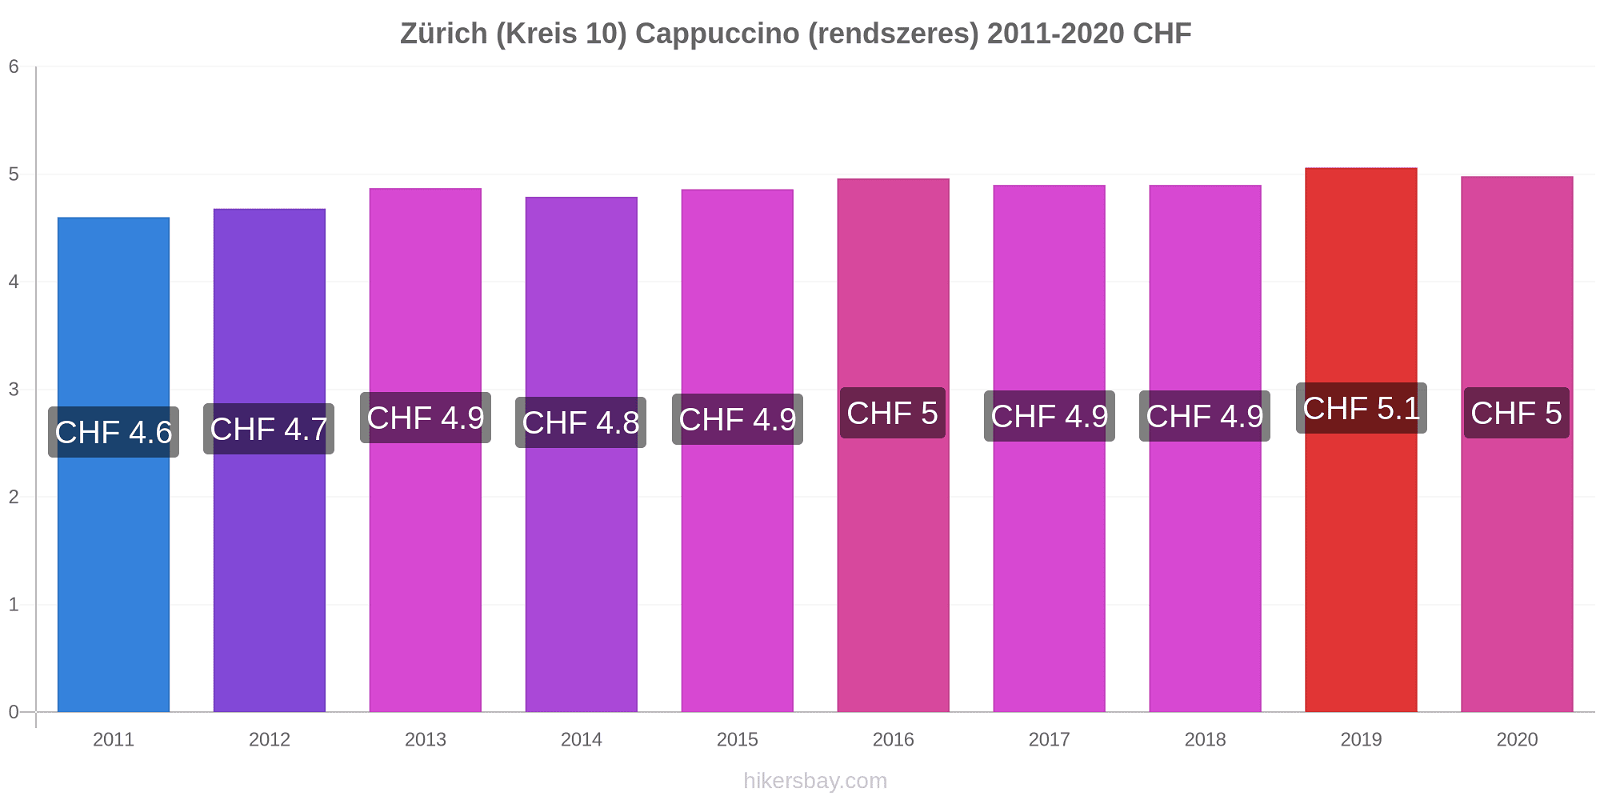 Zürich (Kreis 10) árváltozások Cappuccino (rendszeres) hikersbay.com